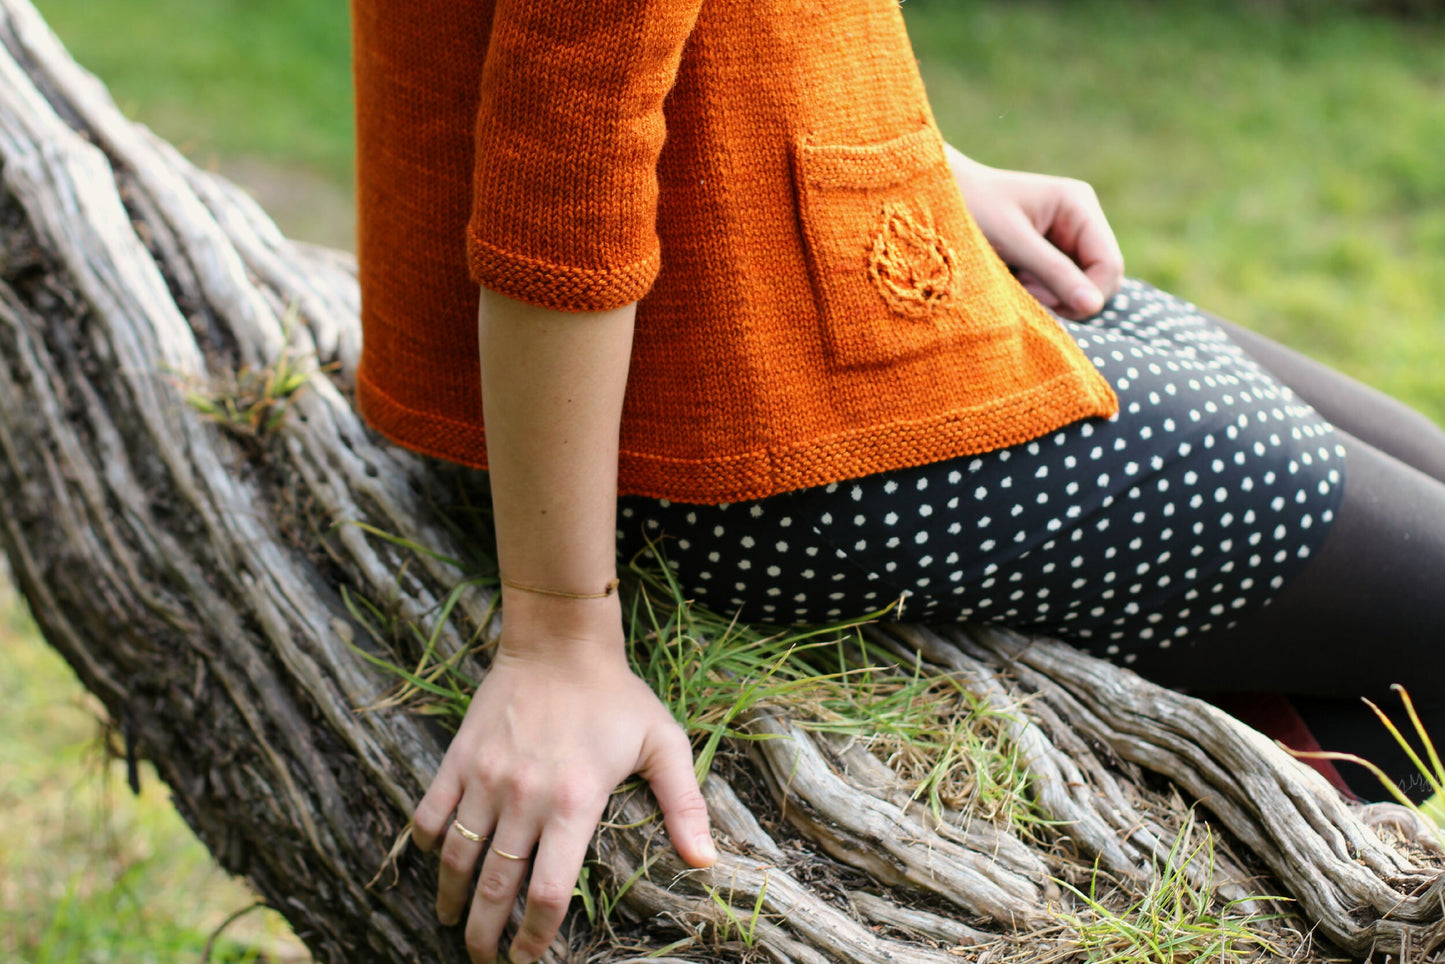 Leaf Motif Cardigan Pattern • Sunlit Autumn Cardigan • Intermediate Knit Pattern PDF